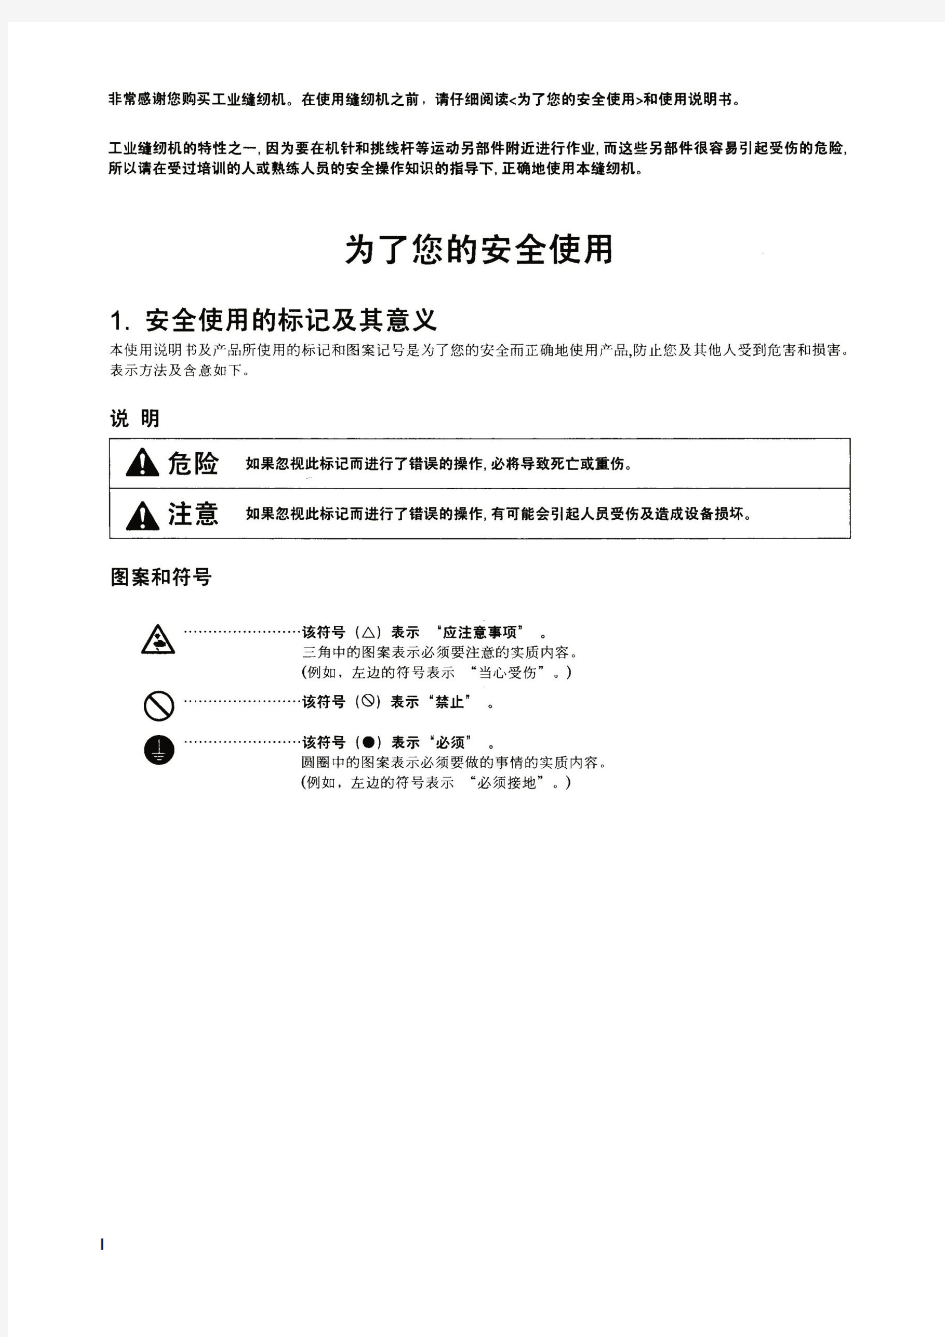 CSM-1790电子平头锁眼机说明书注意事项(中文版)